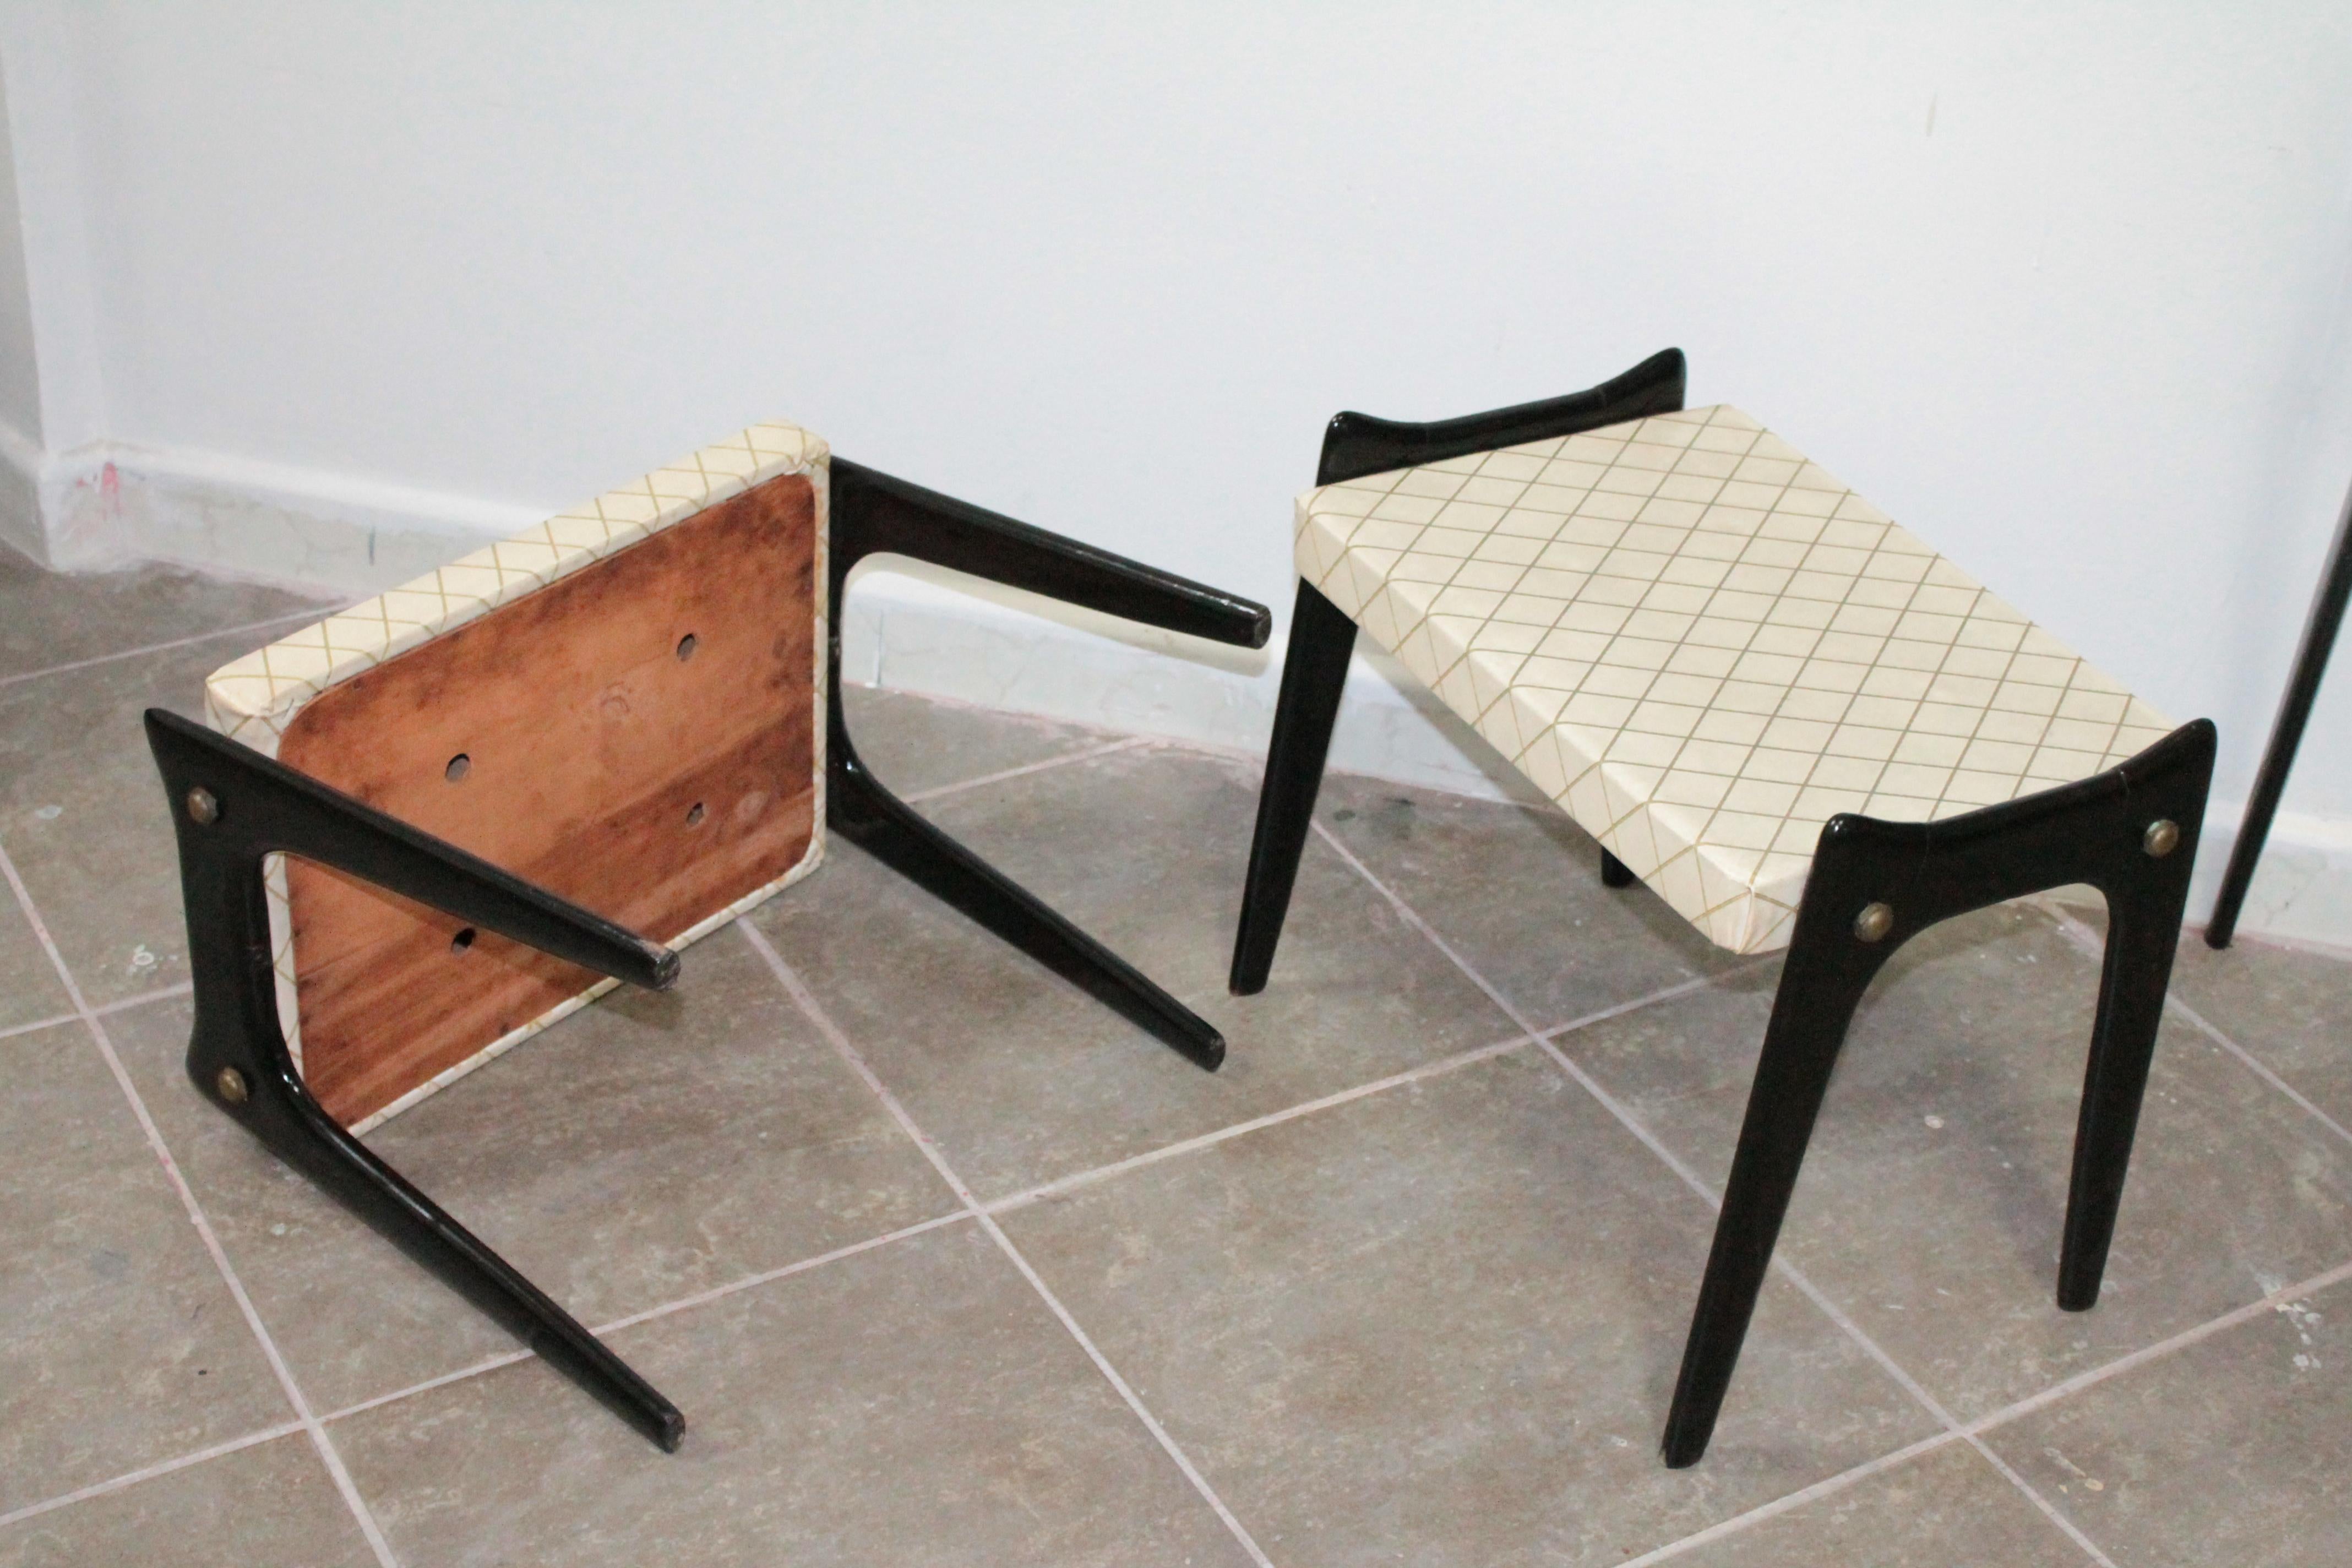 Wood Pair of Small Stools 1950s Ico Parisi Design